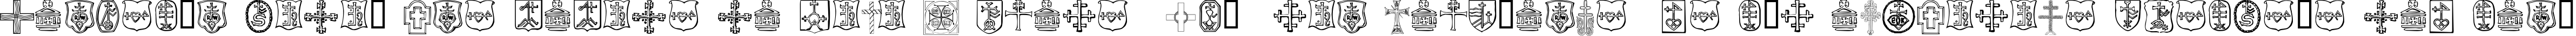 Пример написания шрифтом Christian Crosses IV текста на испанском